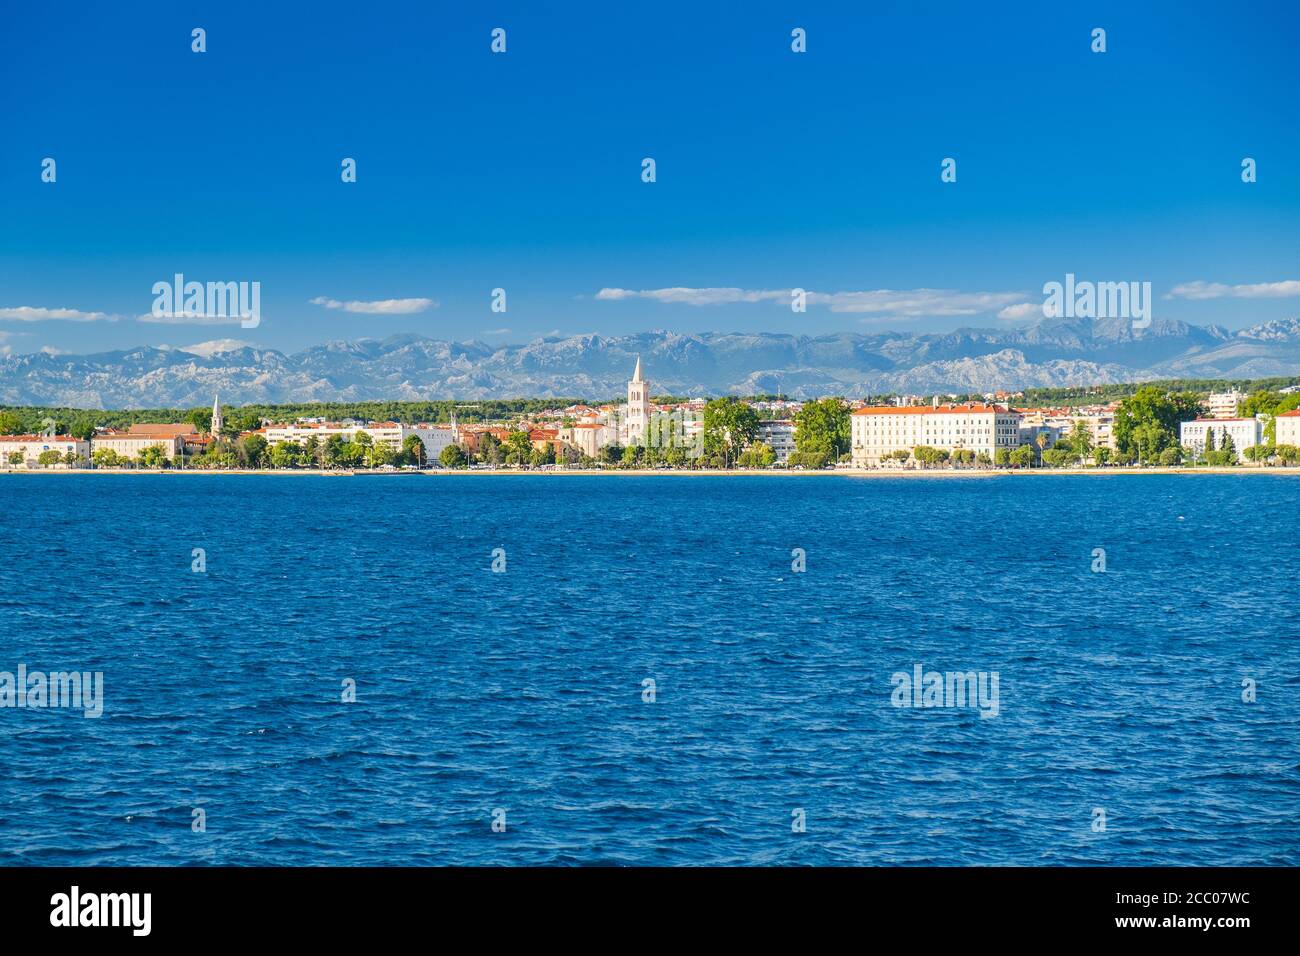 Croatie, ville de Zadar, paysage urbain depuis le bord de mer. Zadar est une destination touristique célèbre sur la côte Adriatique. Banque D'Images